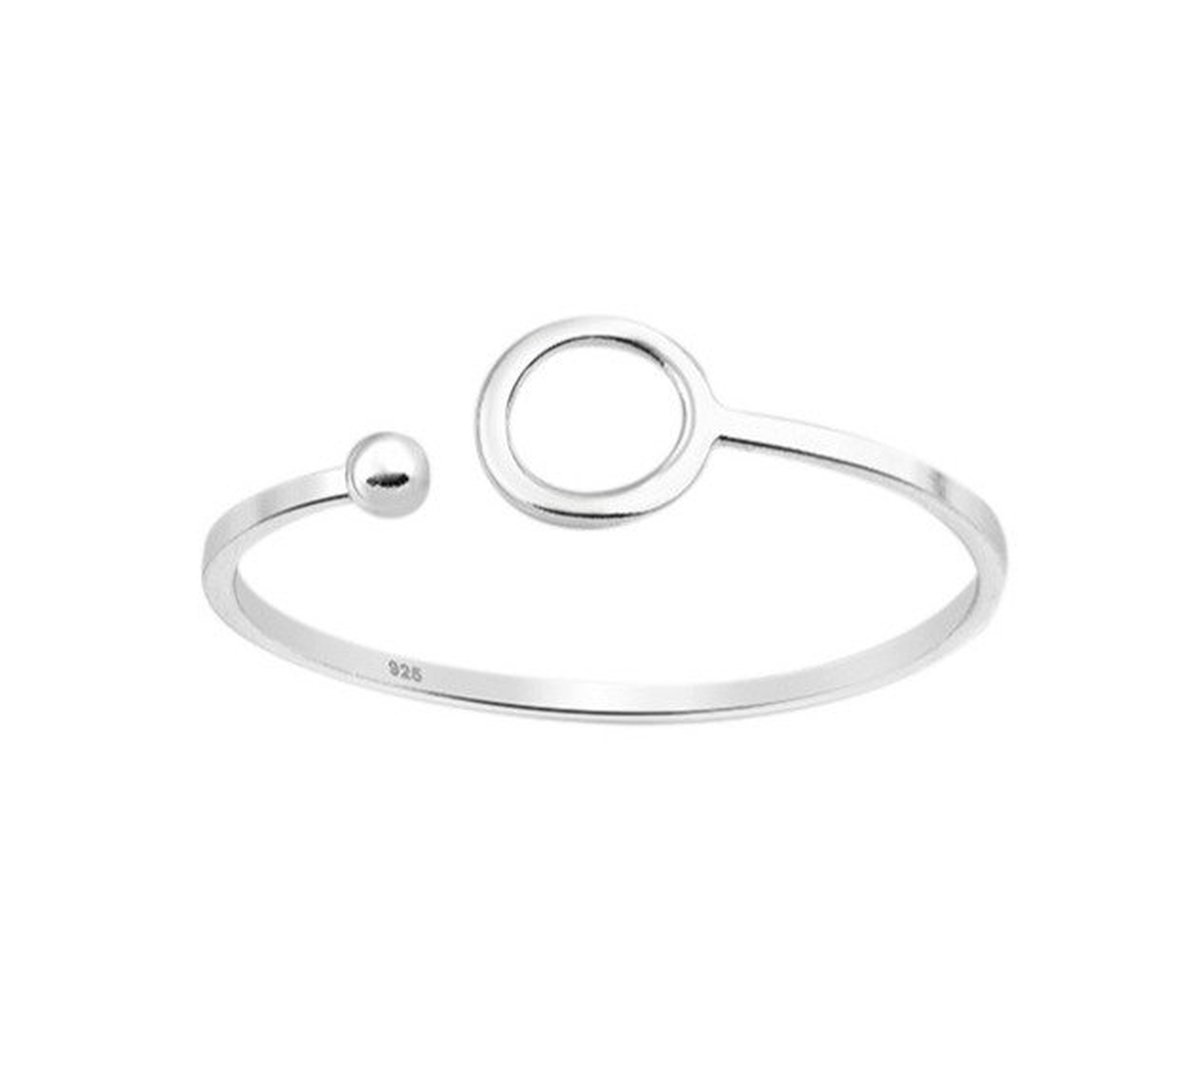 Ring vrouw verstelbaar - Multimaat ring dames verstelbaar zilver 925 Roccia - met geschenkverpakking van Sophie Siero - Sieraden voor dames